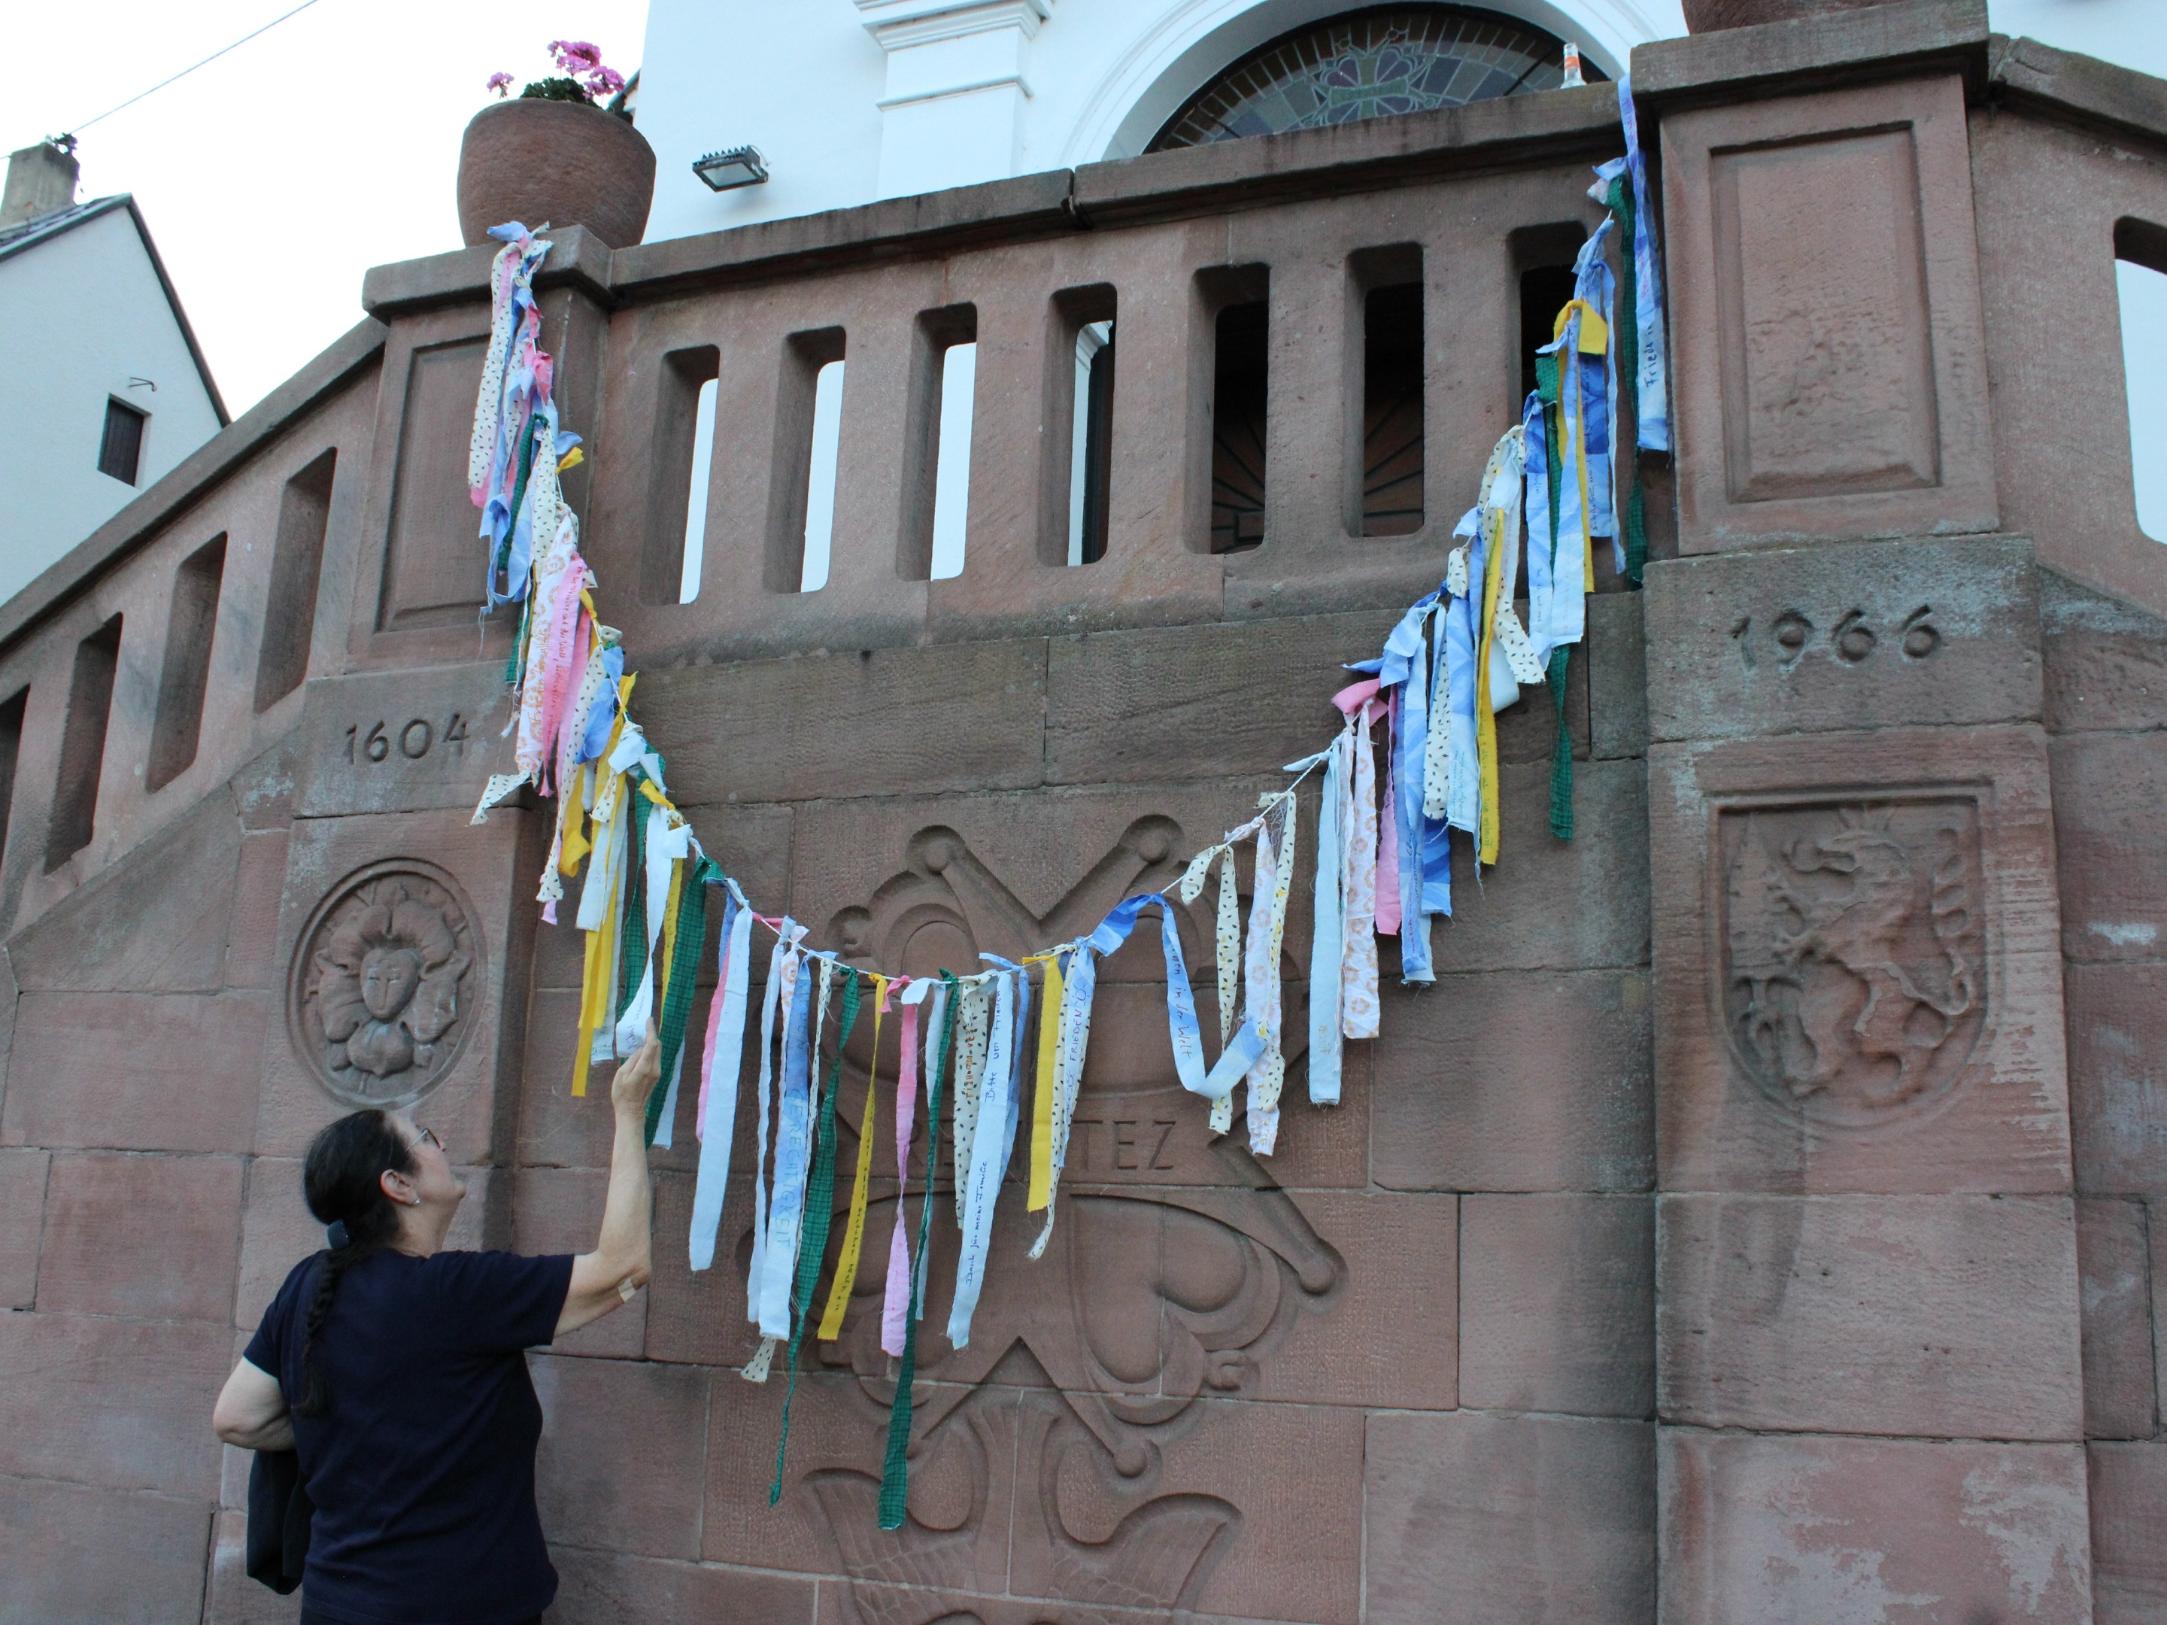 Die Gebetsbänder mit Wünschen für Frieden und Gerechtigkeit wurden an der Treppe der Hugenottenkirche aufgehängt. Foto: evks/Eulenstein